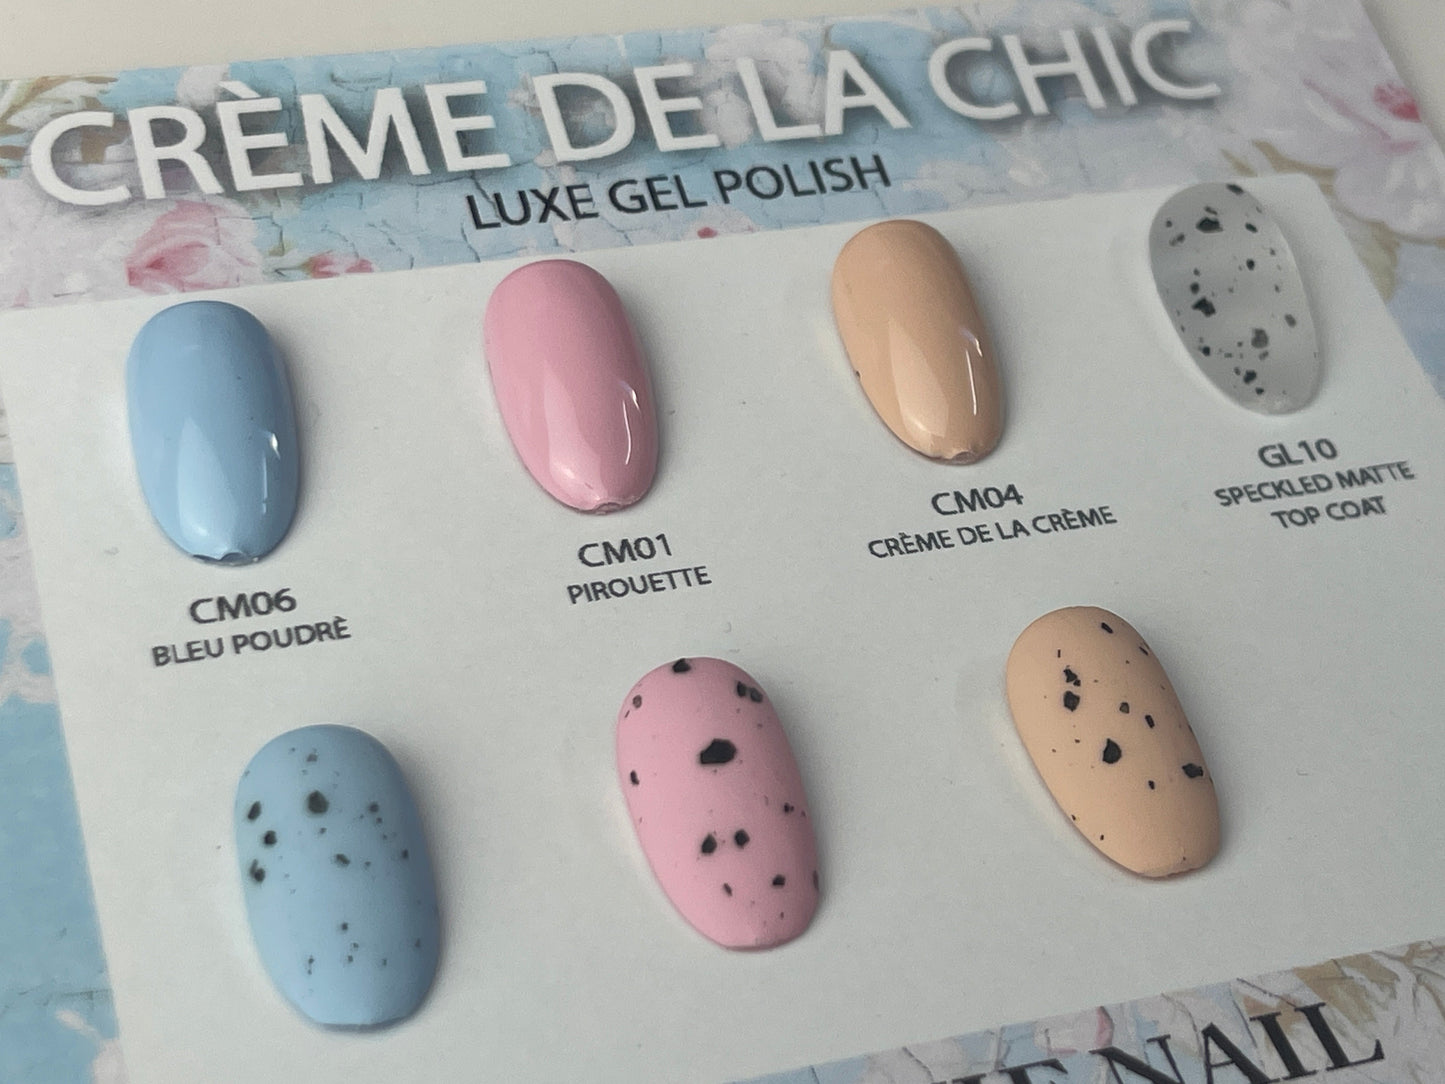 HEMA FREE Crème de la Chic- Bleu Poudrè UV Gel No.CM06 15ml